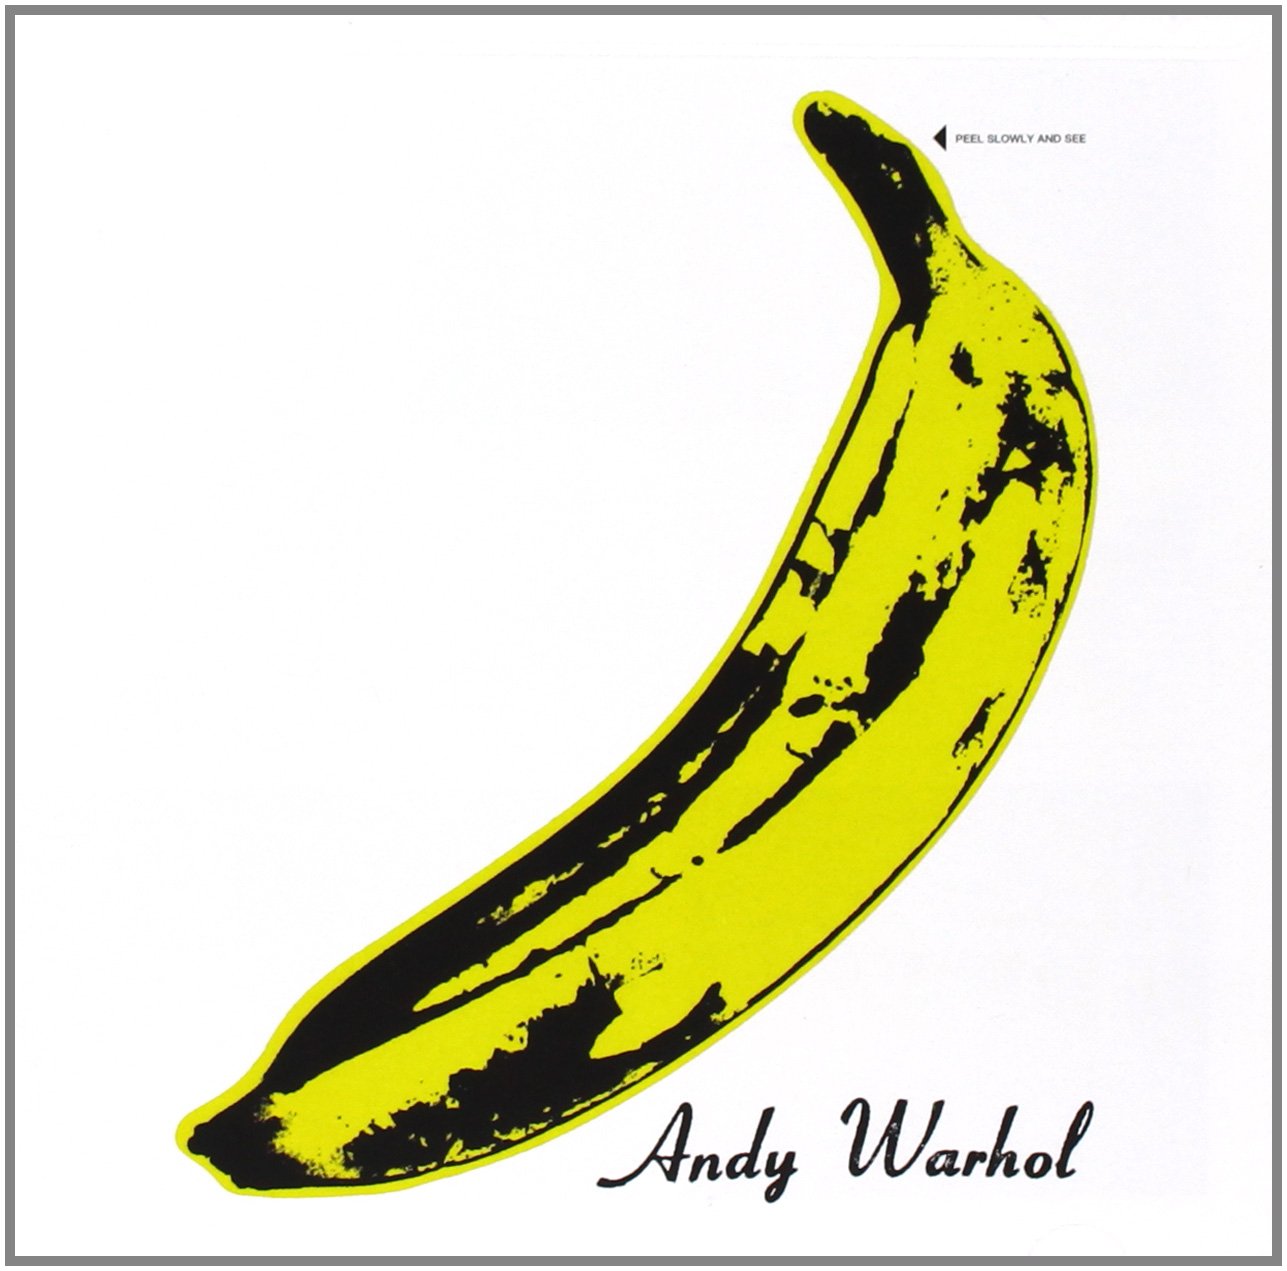 Det ikoniske omslaget til albumet "The Velvet Underground and Nico". Designet av Andy Warhol som var den eneste som fikk navnet sitt på omslaget.